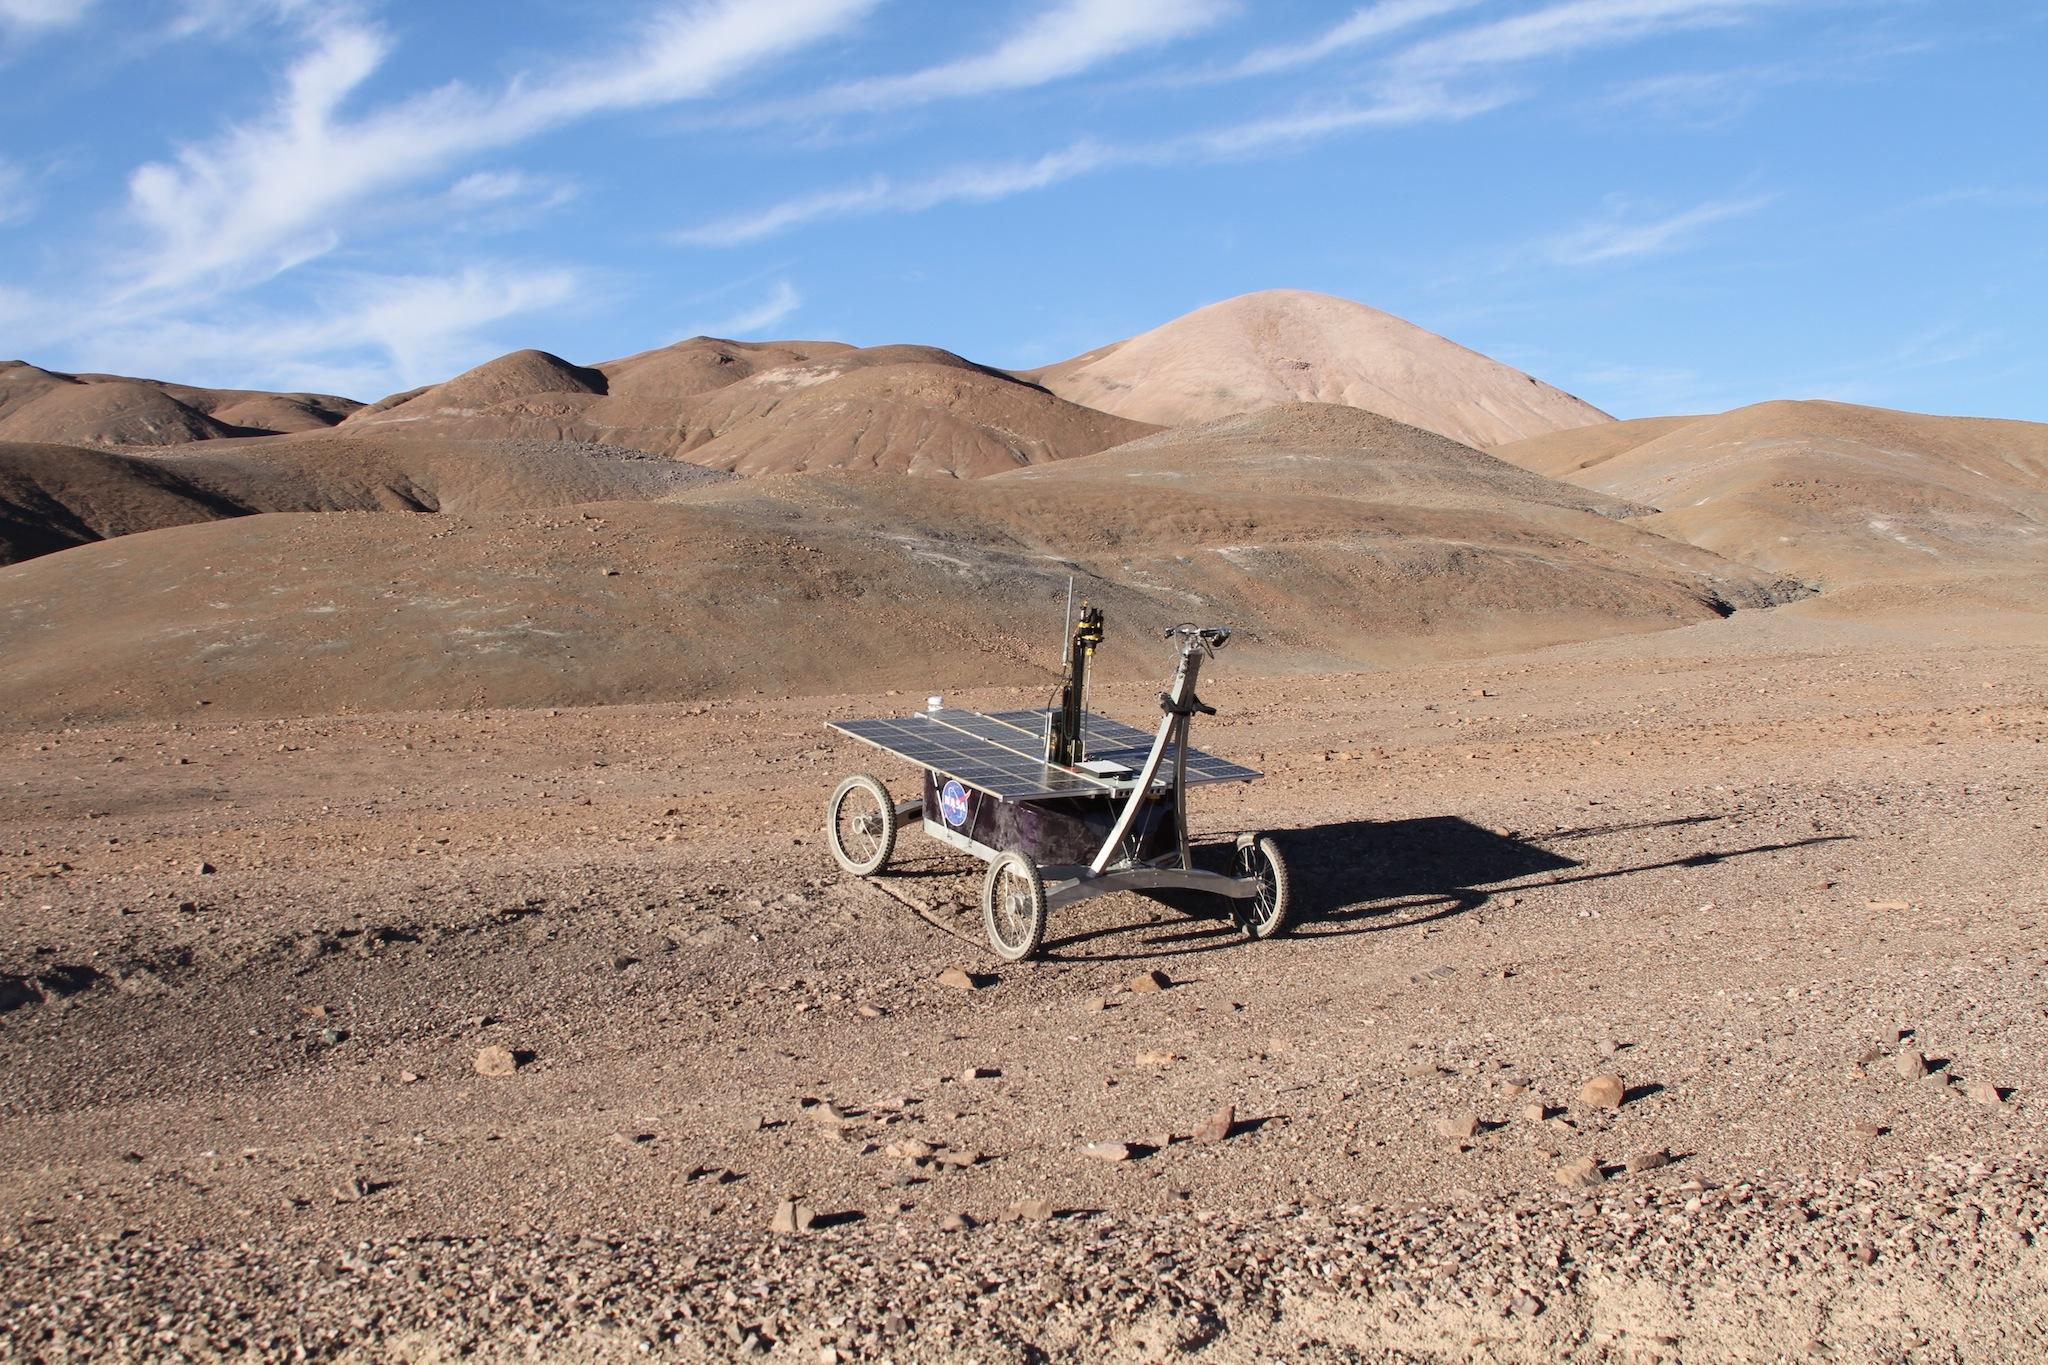 El rover de la NASA recogió con éxito muestras de sedimentos hasta una profundidad de 80 centímetros en el subsuelo del desierto chileno de Atacama. Imagen: Prof. Stephen B. Pointing / Frontiers.